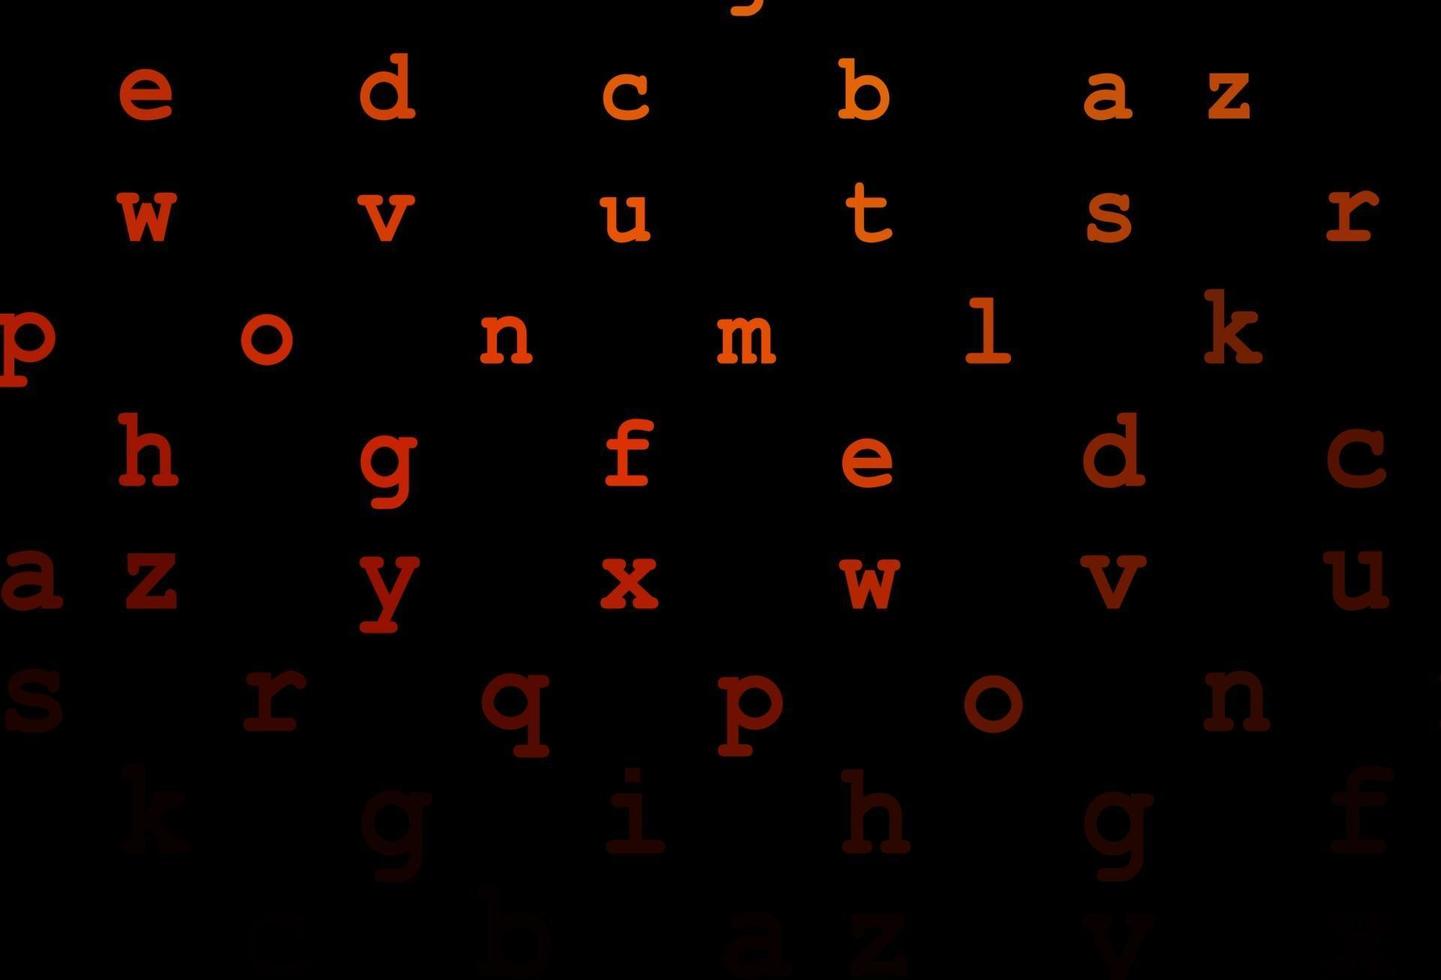 mörk orange vektor mönster med abc symboler.